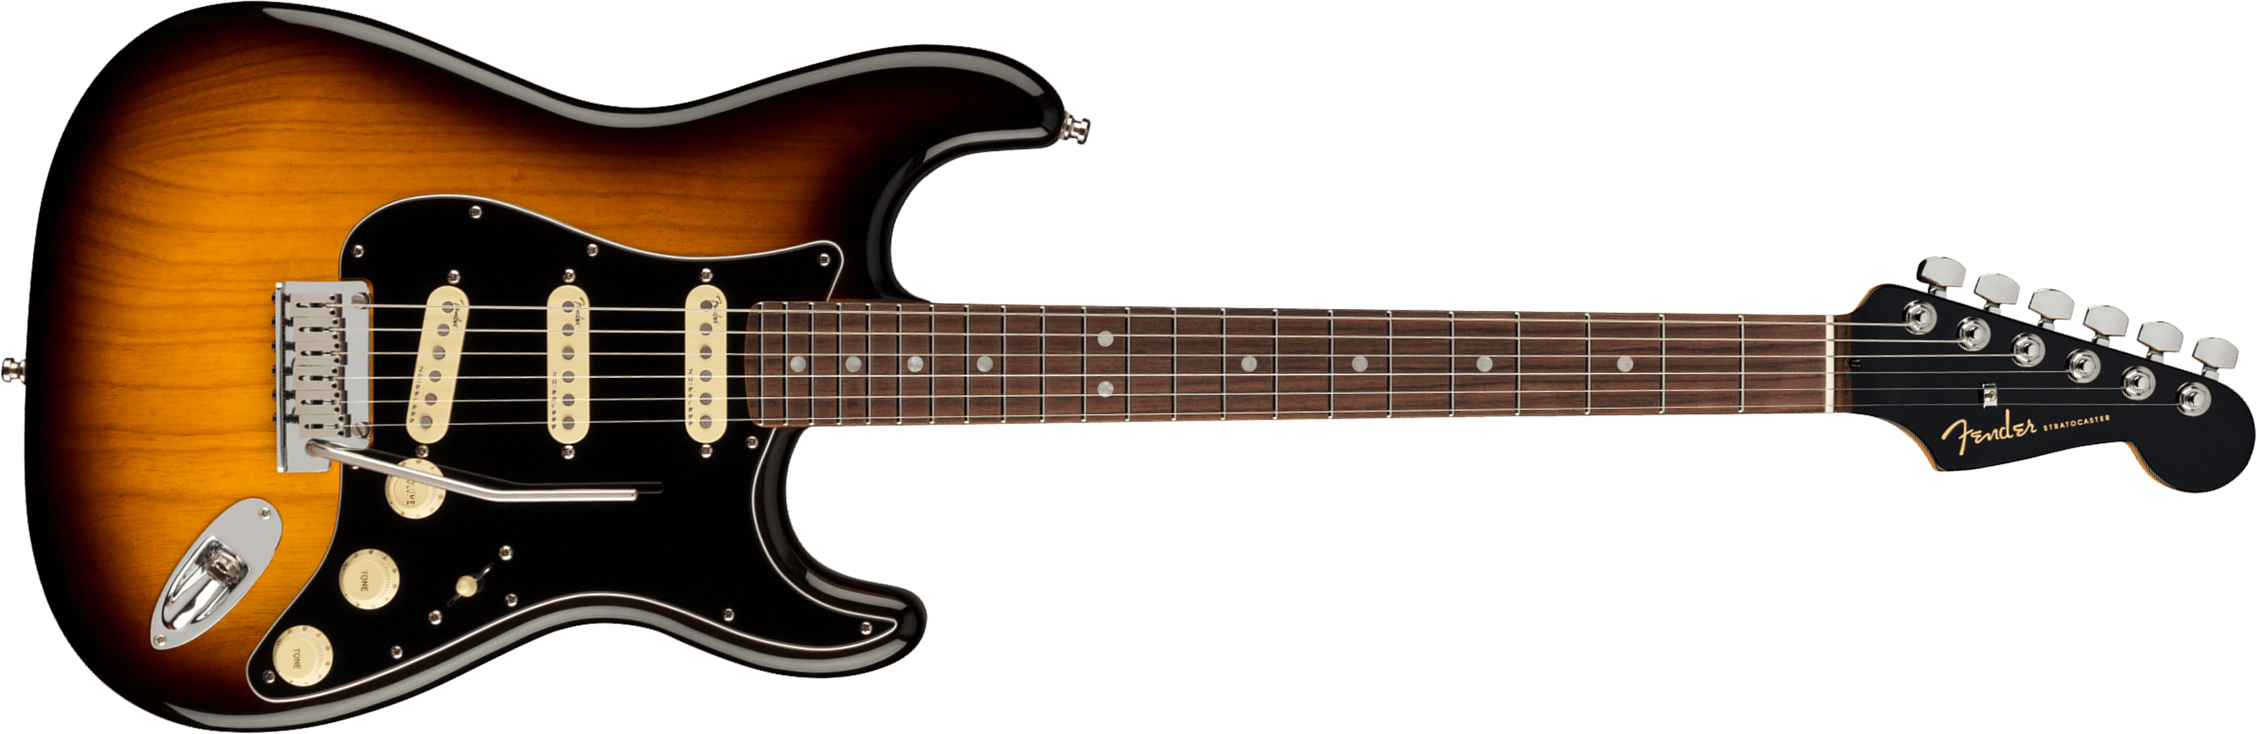 Fender Strat American Ultra Luxe Usa Rw +etui - 2-color Sunburst - E-Gitarre in Str-Form - Main picture